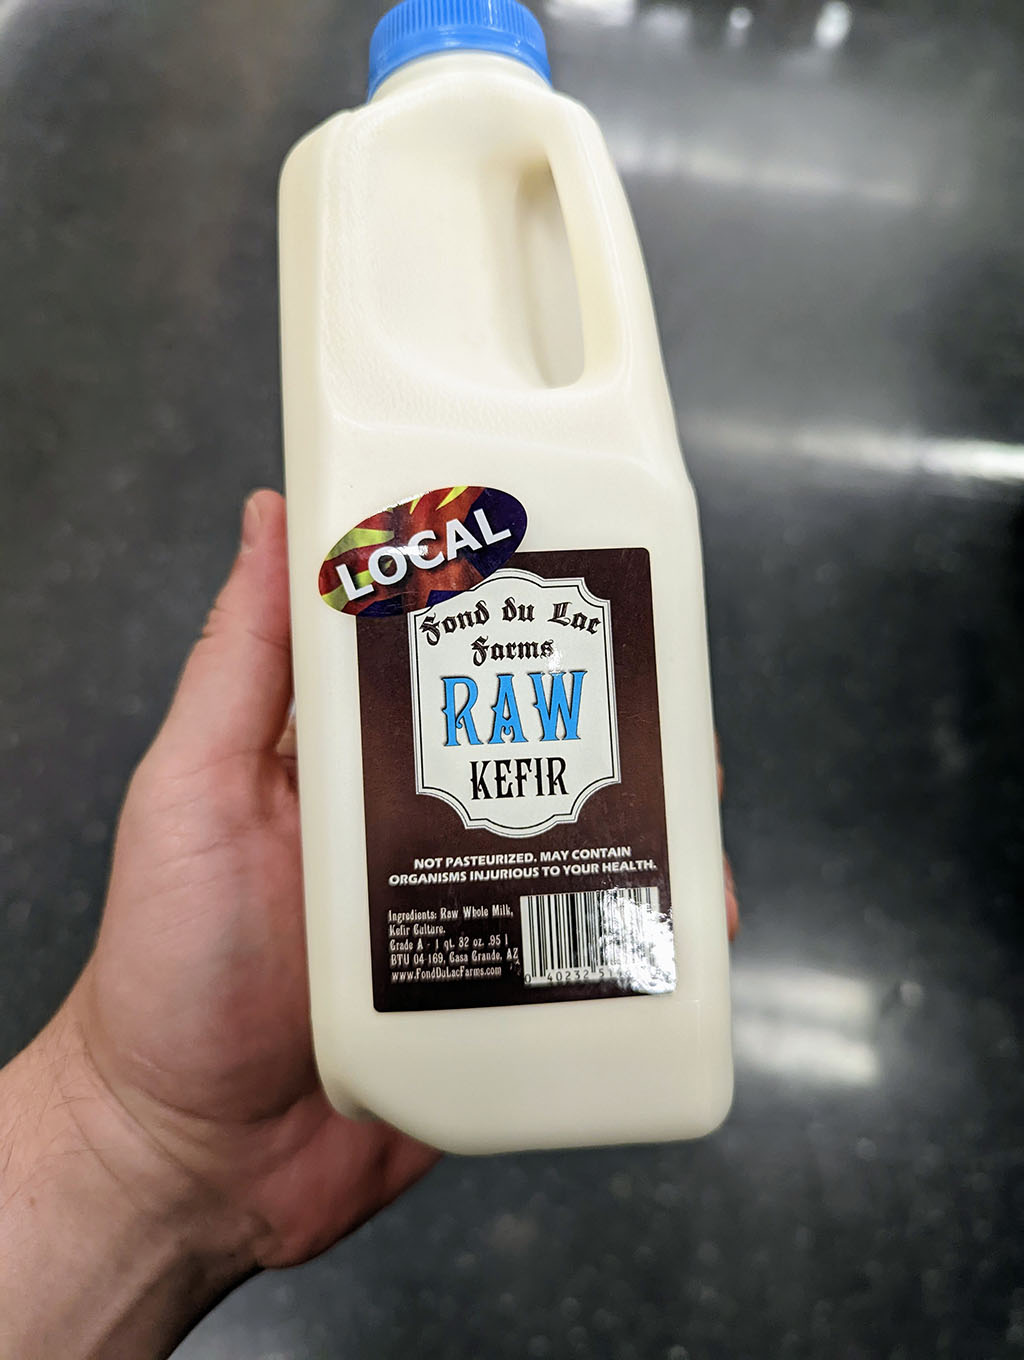 Raw milk and raw kefir in Phoenix